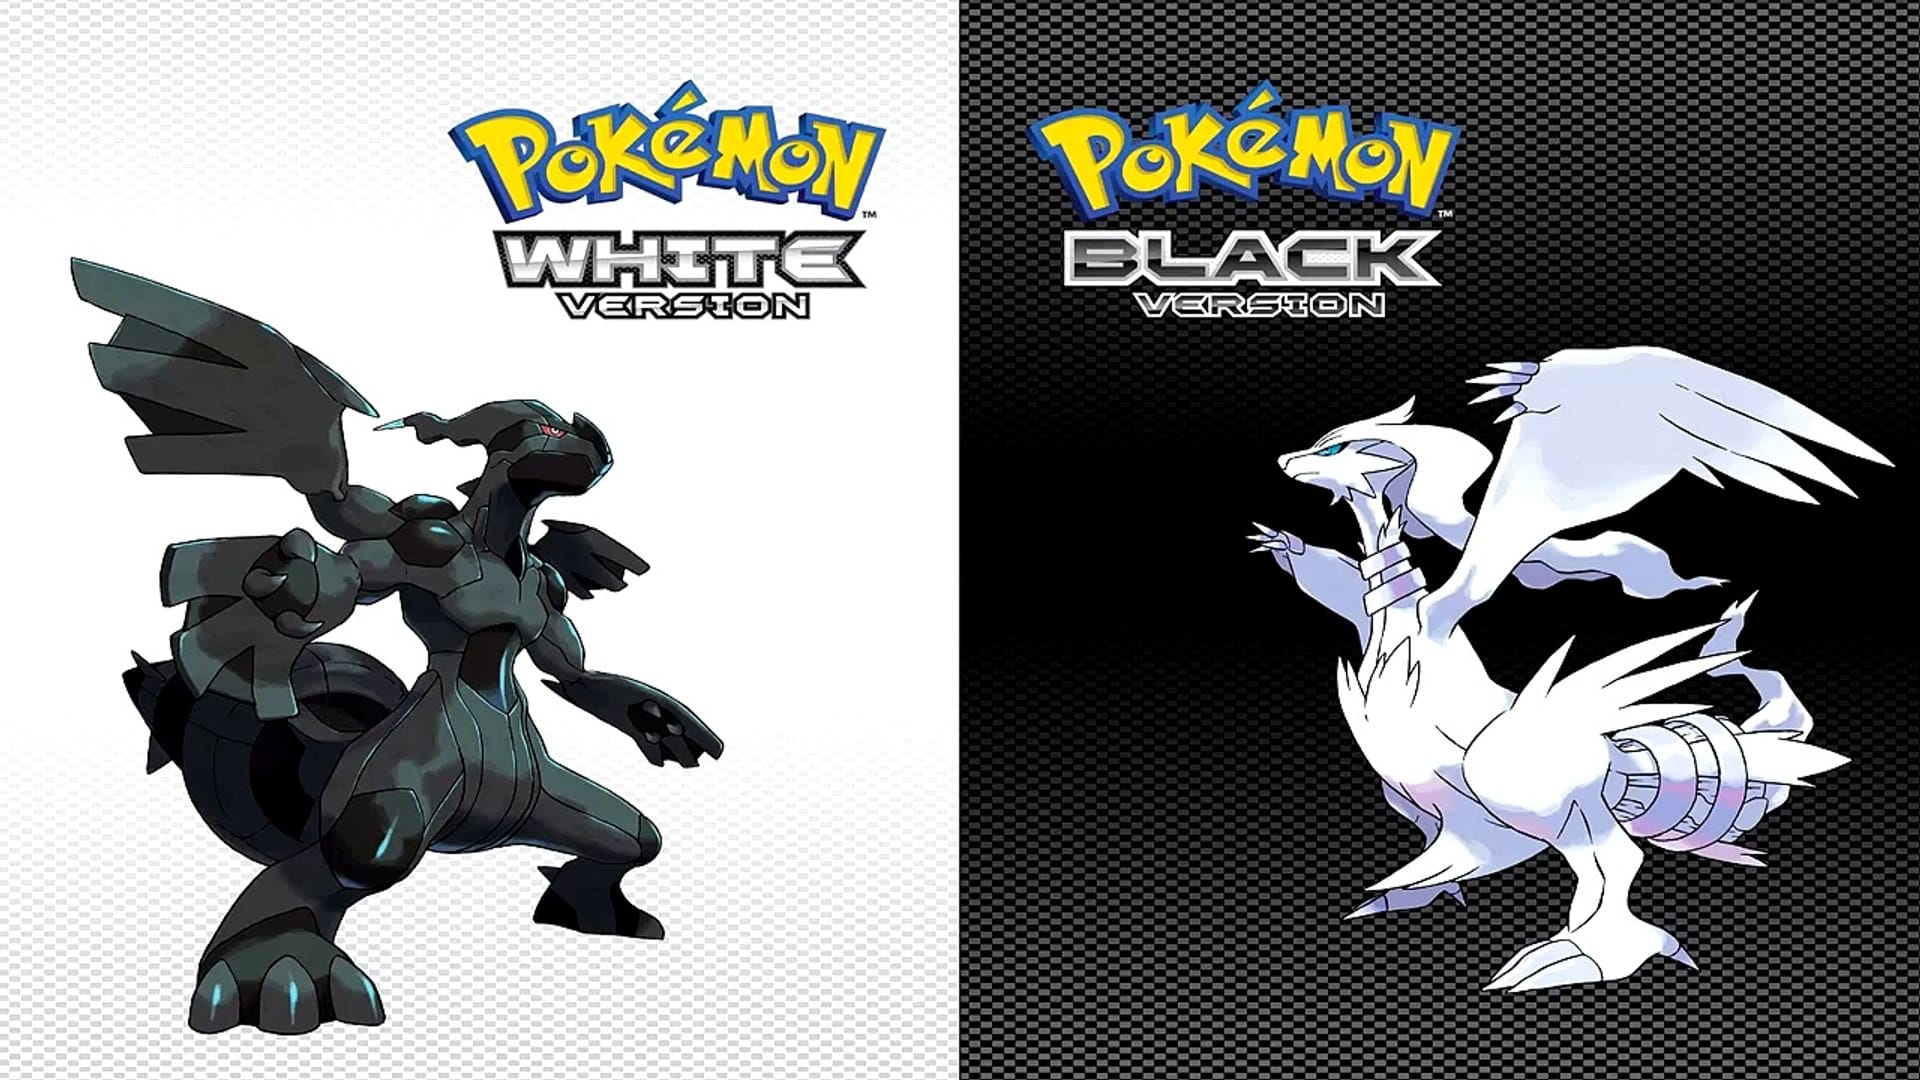 10 Best Pokemon Black And White ROM Hacks